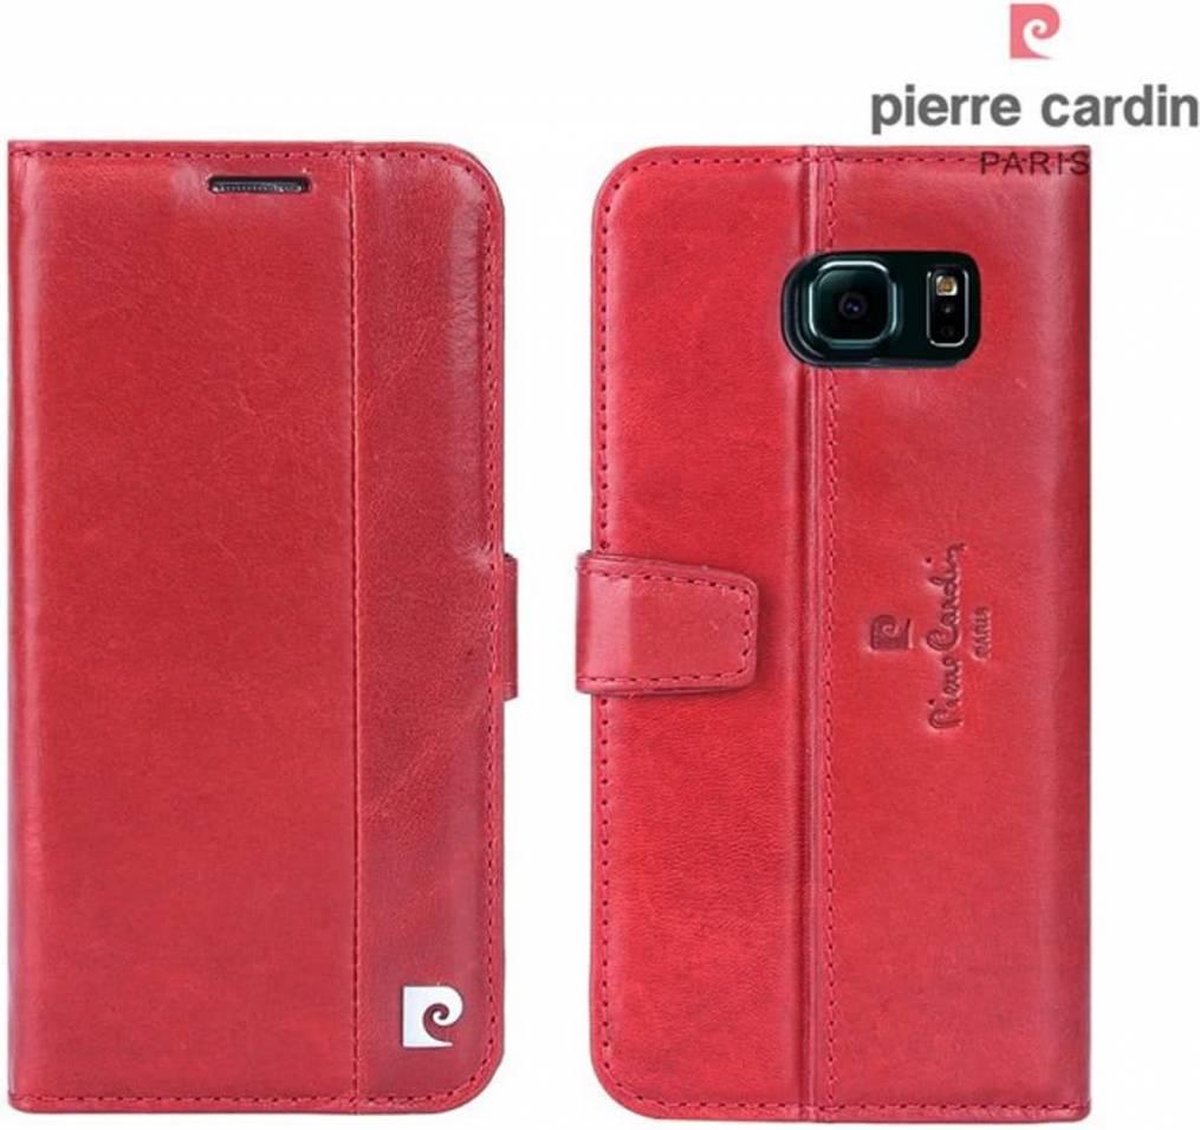 Pierre Cardin Samsung Galaxy S6 echt leer boek case hoesje met ruimte voor pasje en 2 simkaarten Rood